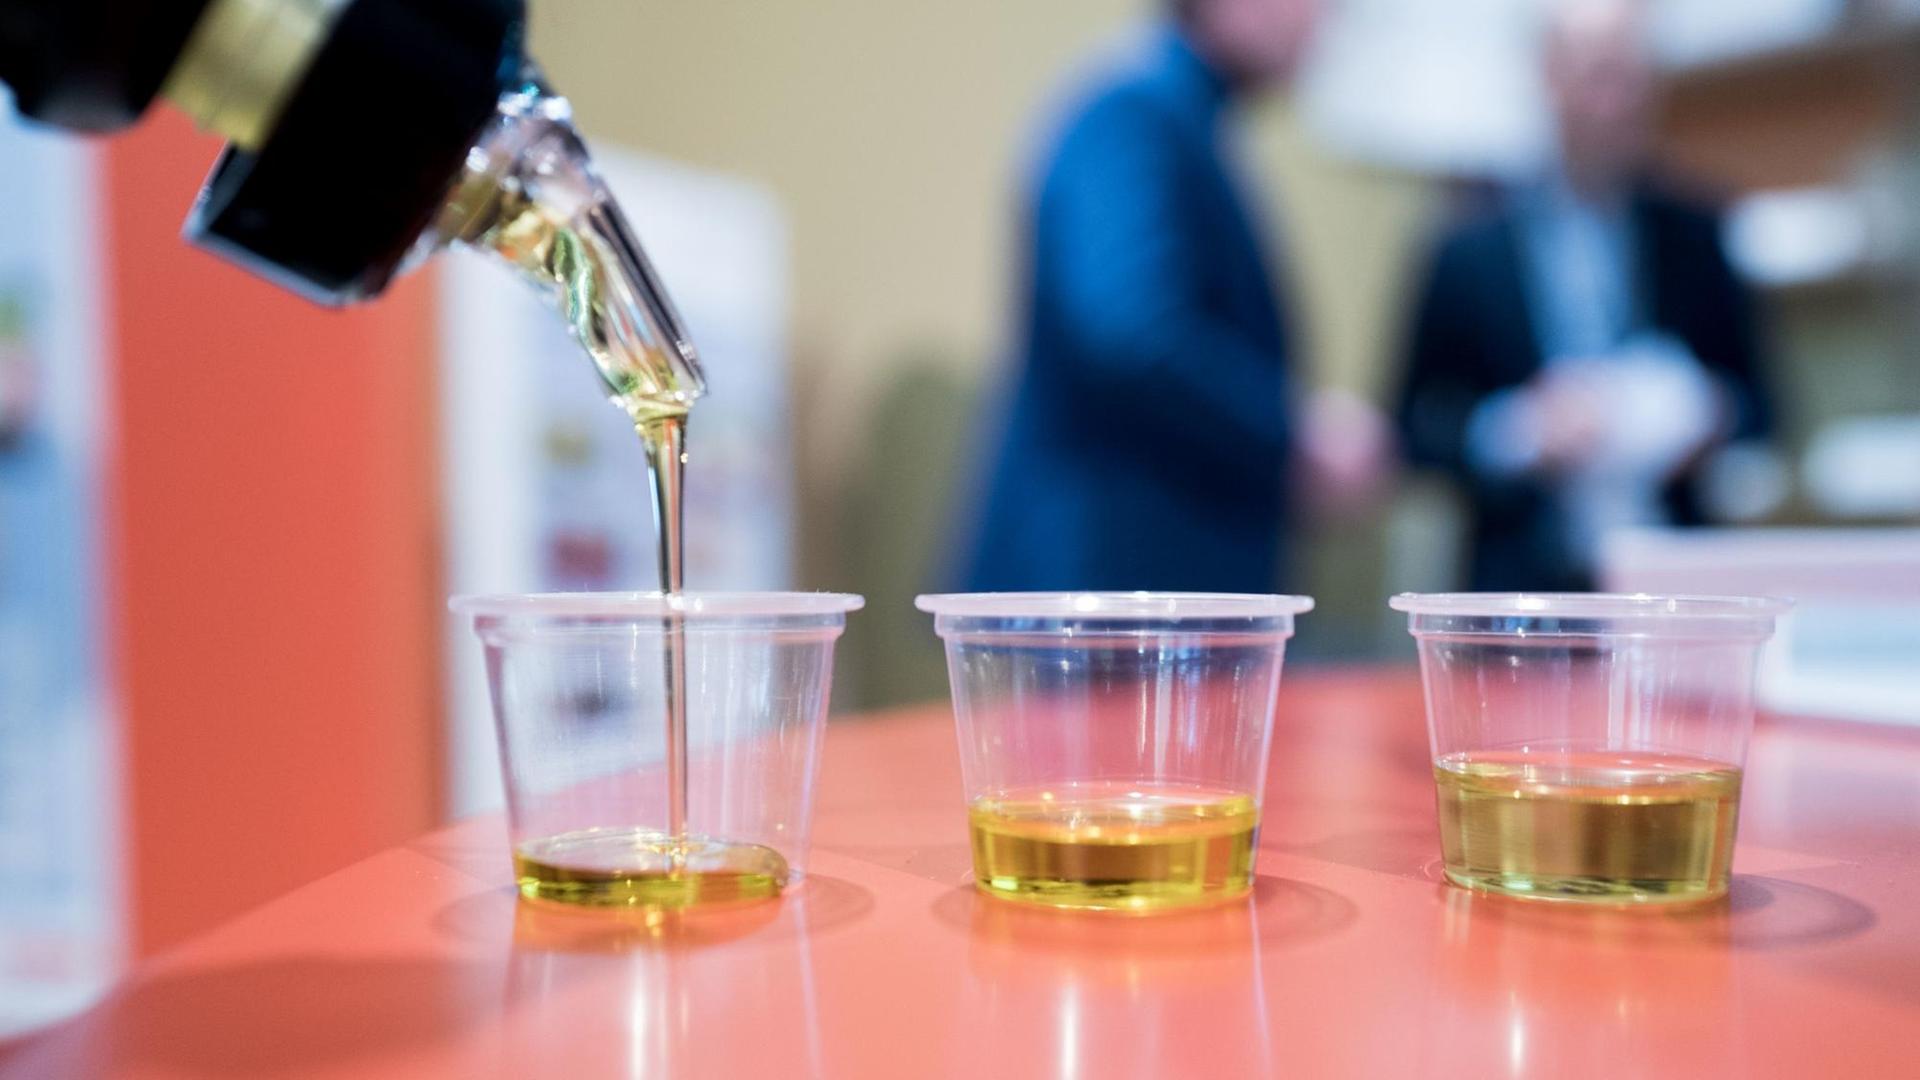 Auf der Grünen Woche werden unterschiedliche Speiseöle am 20.01.2017 in Berlin abgefüllt. Zwei der Becher enthalten Olivenöl, einer enthält Rapsöl.